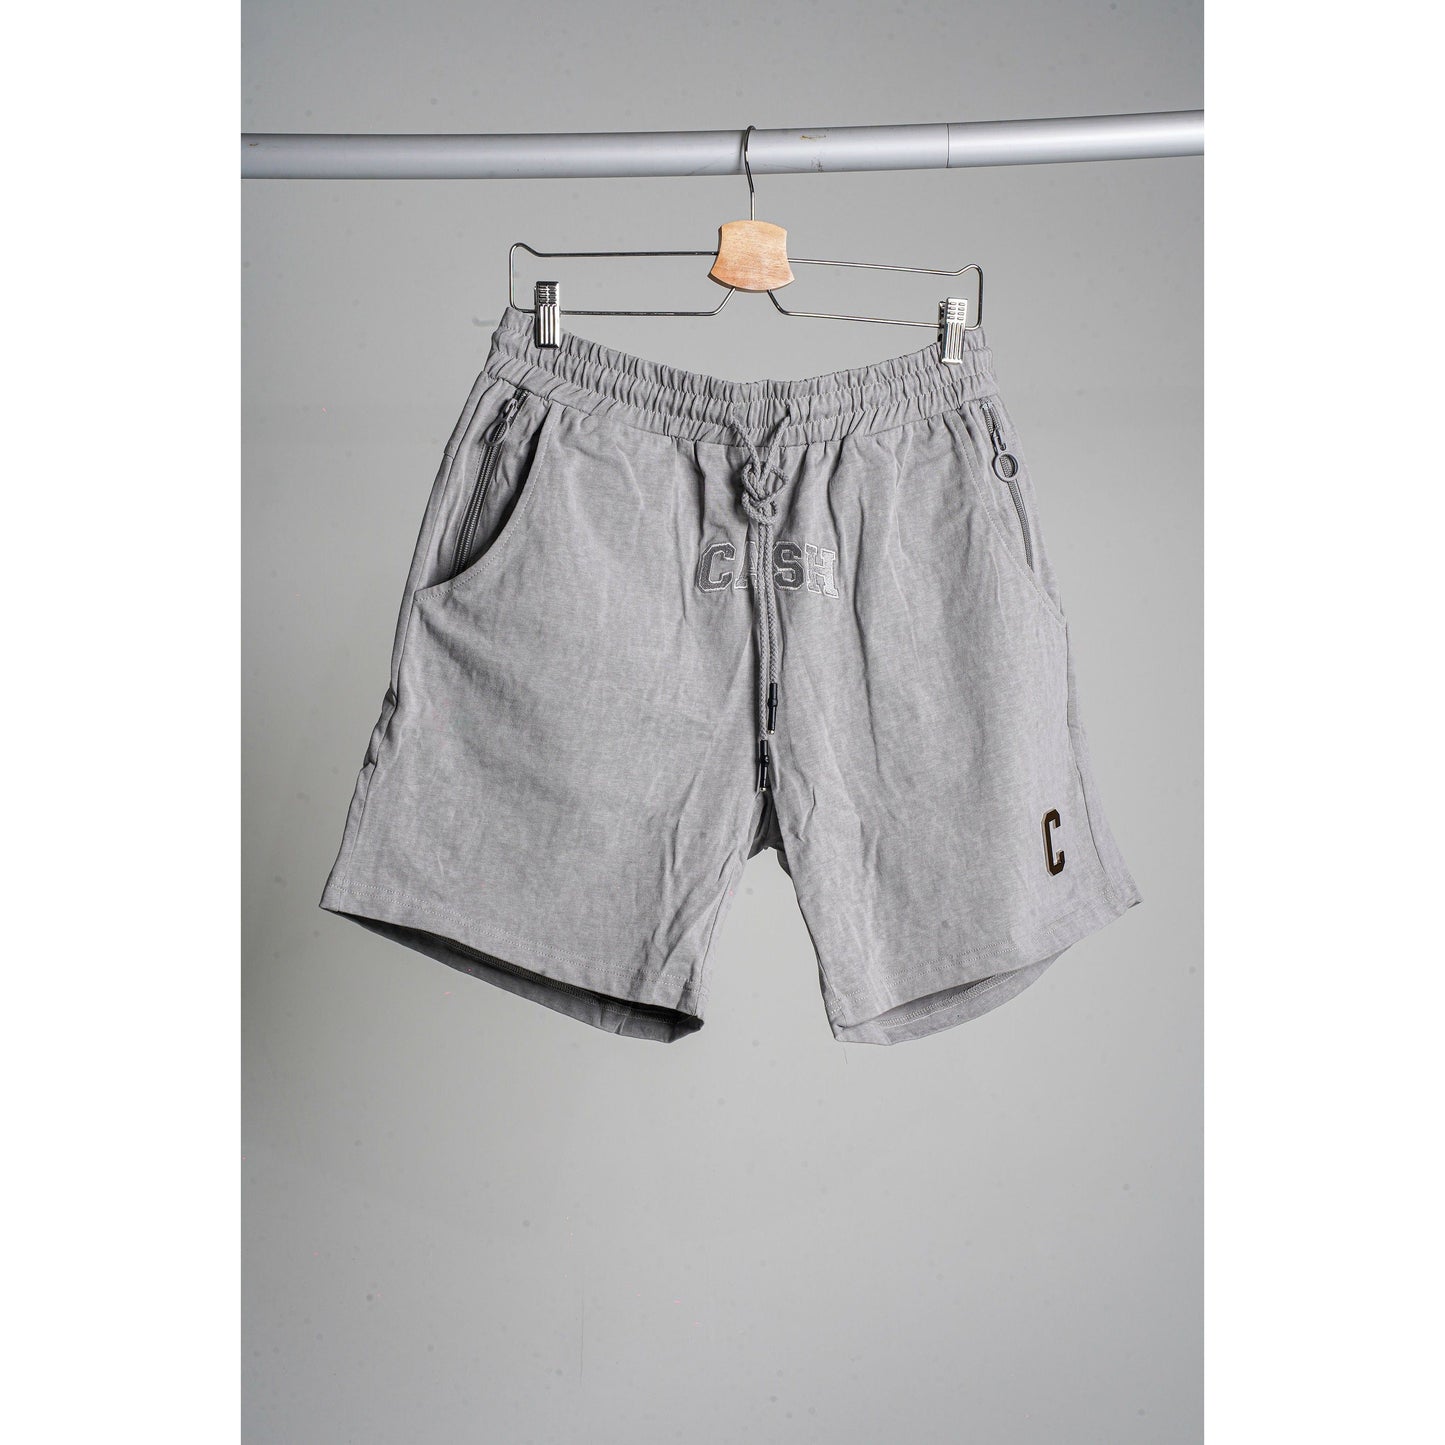 Chrome Shorts : Heather Grey